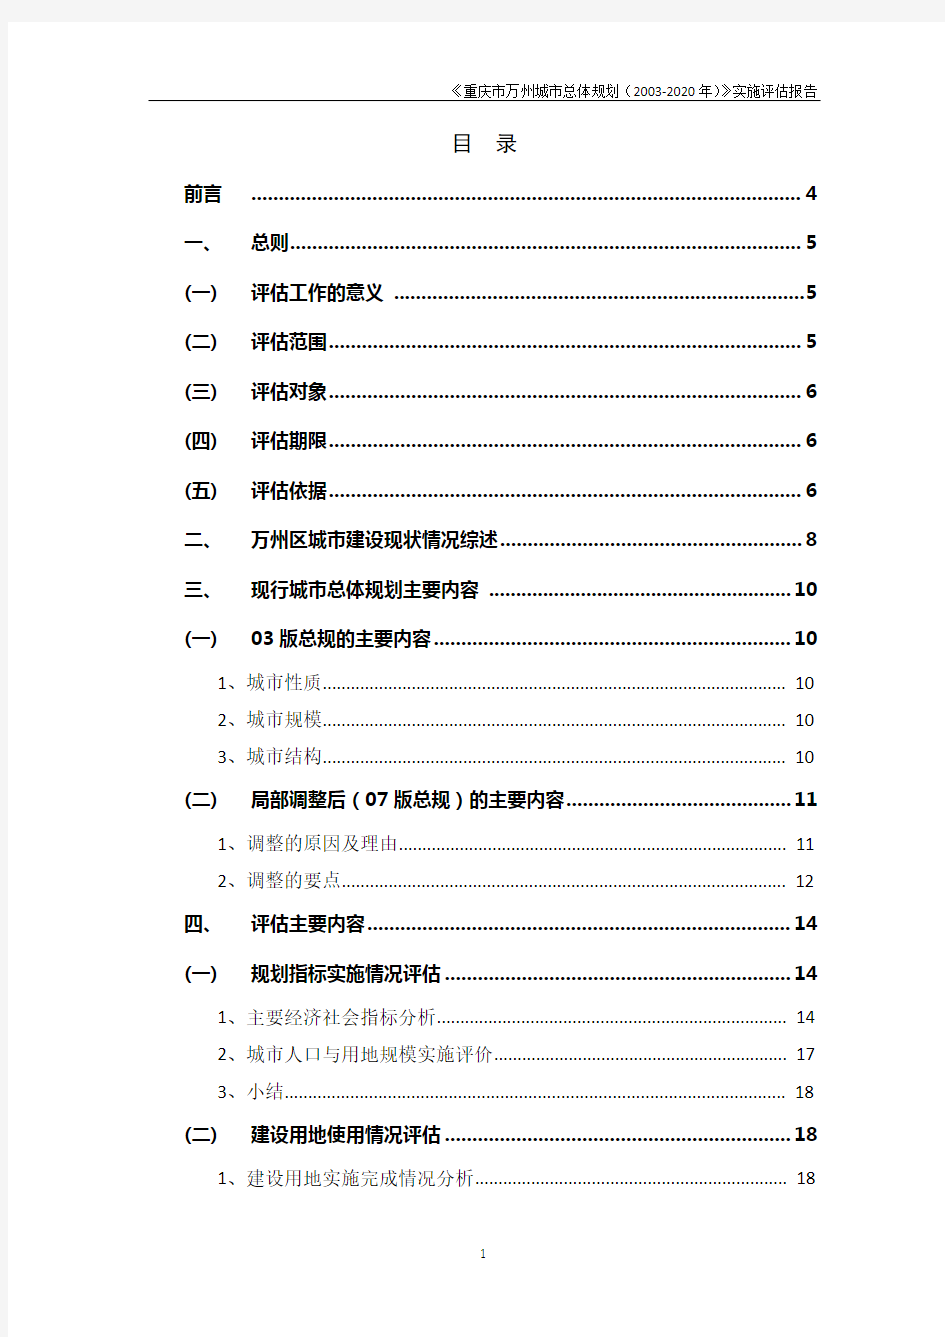 《重庆市万州城市总体规划(2003-2020年)》实施报告